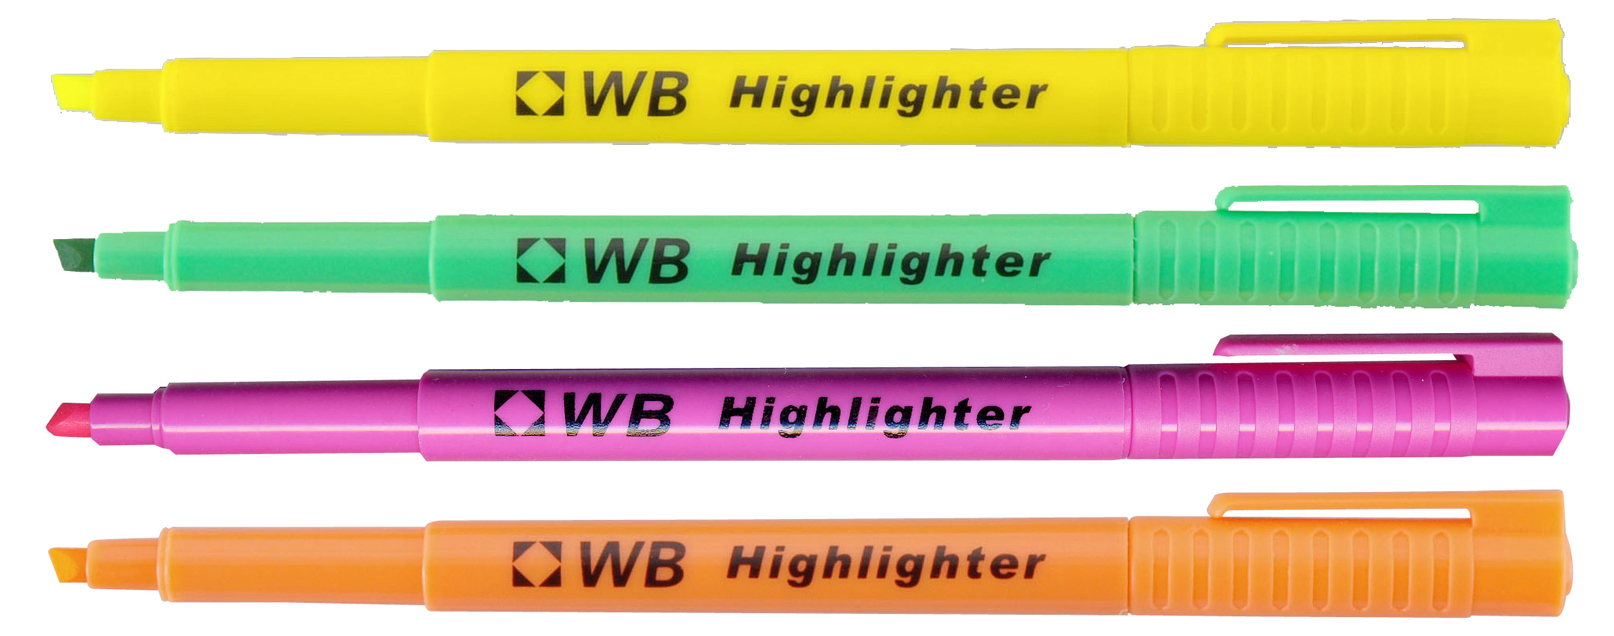 WB Highlighter Markeerstift Assorti